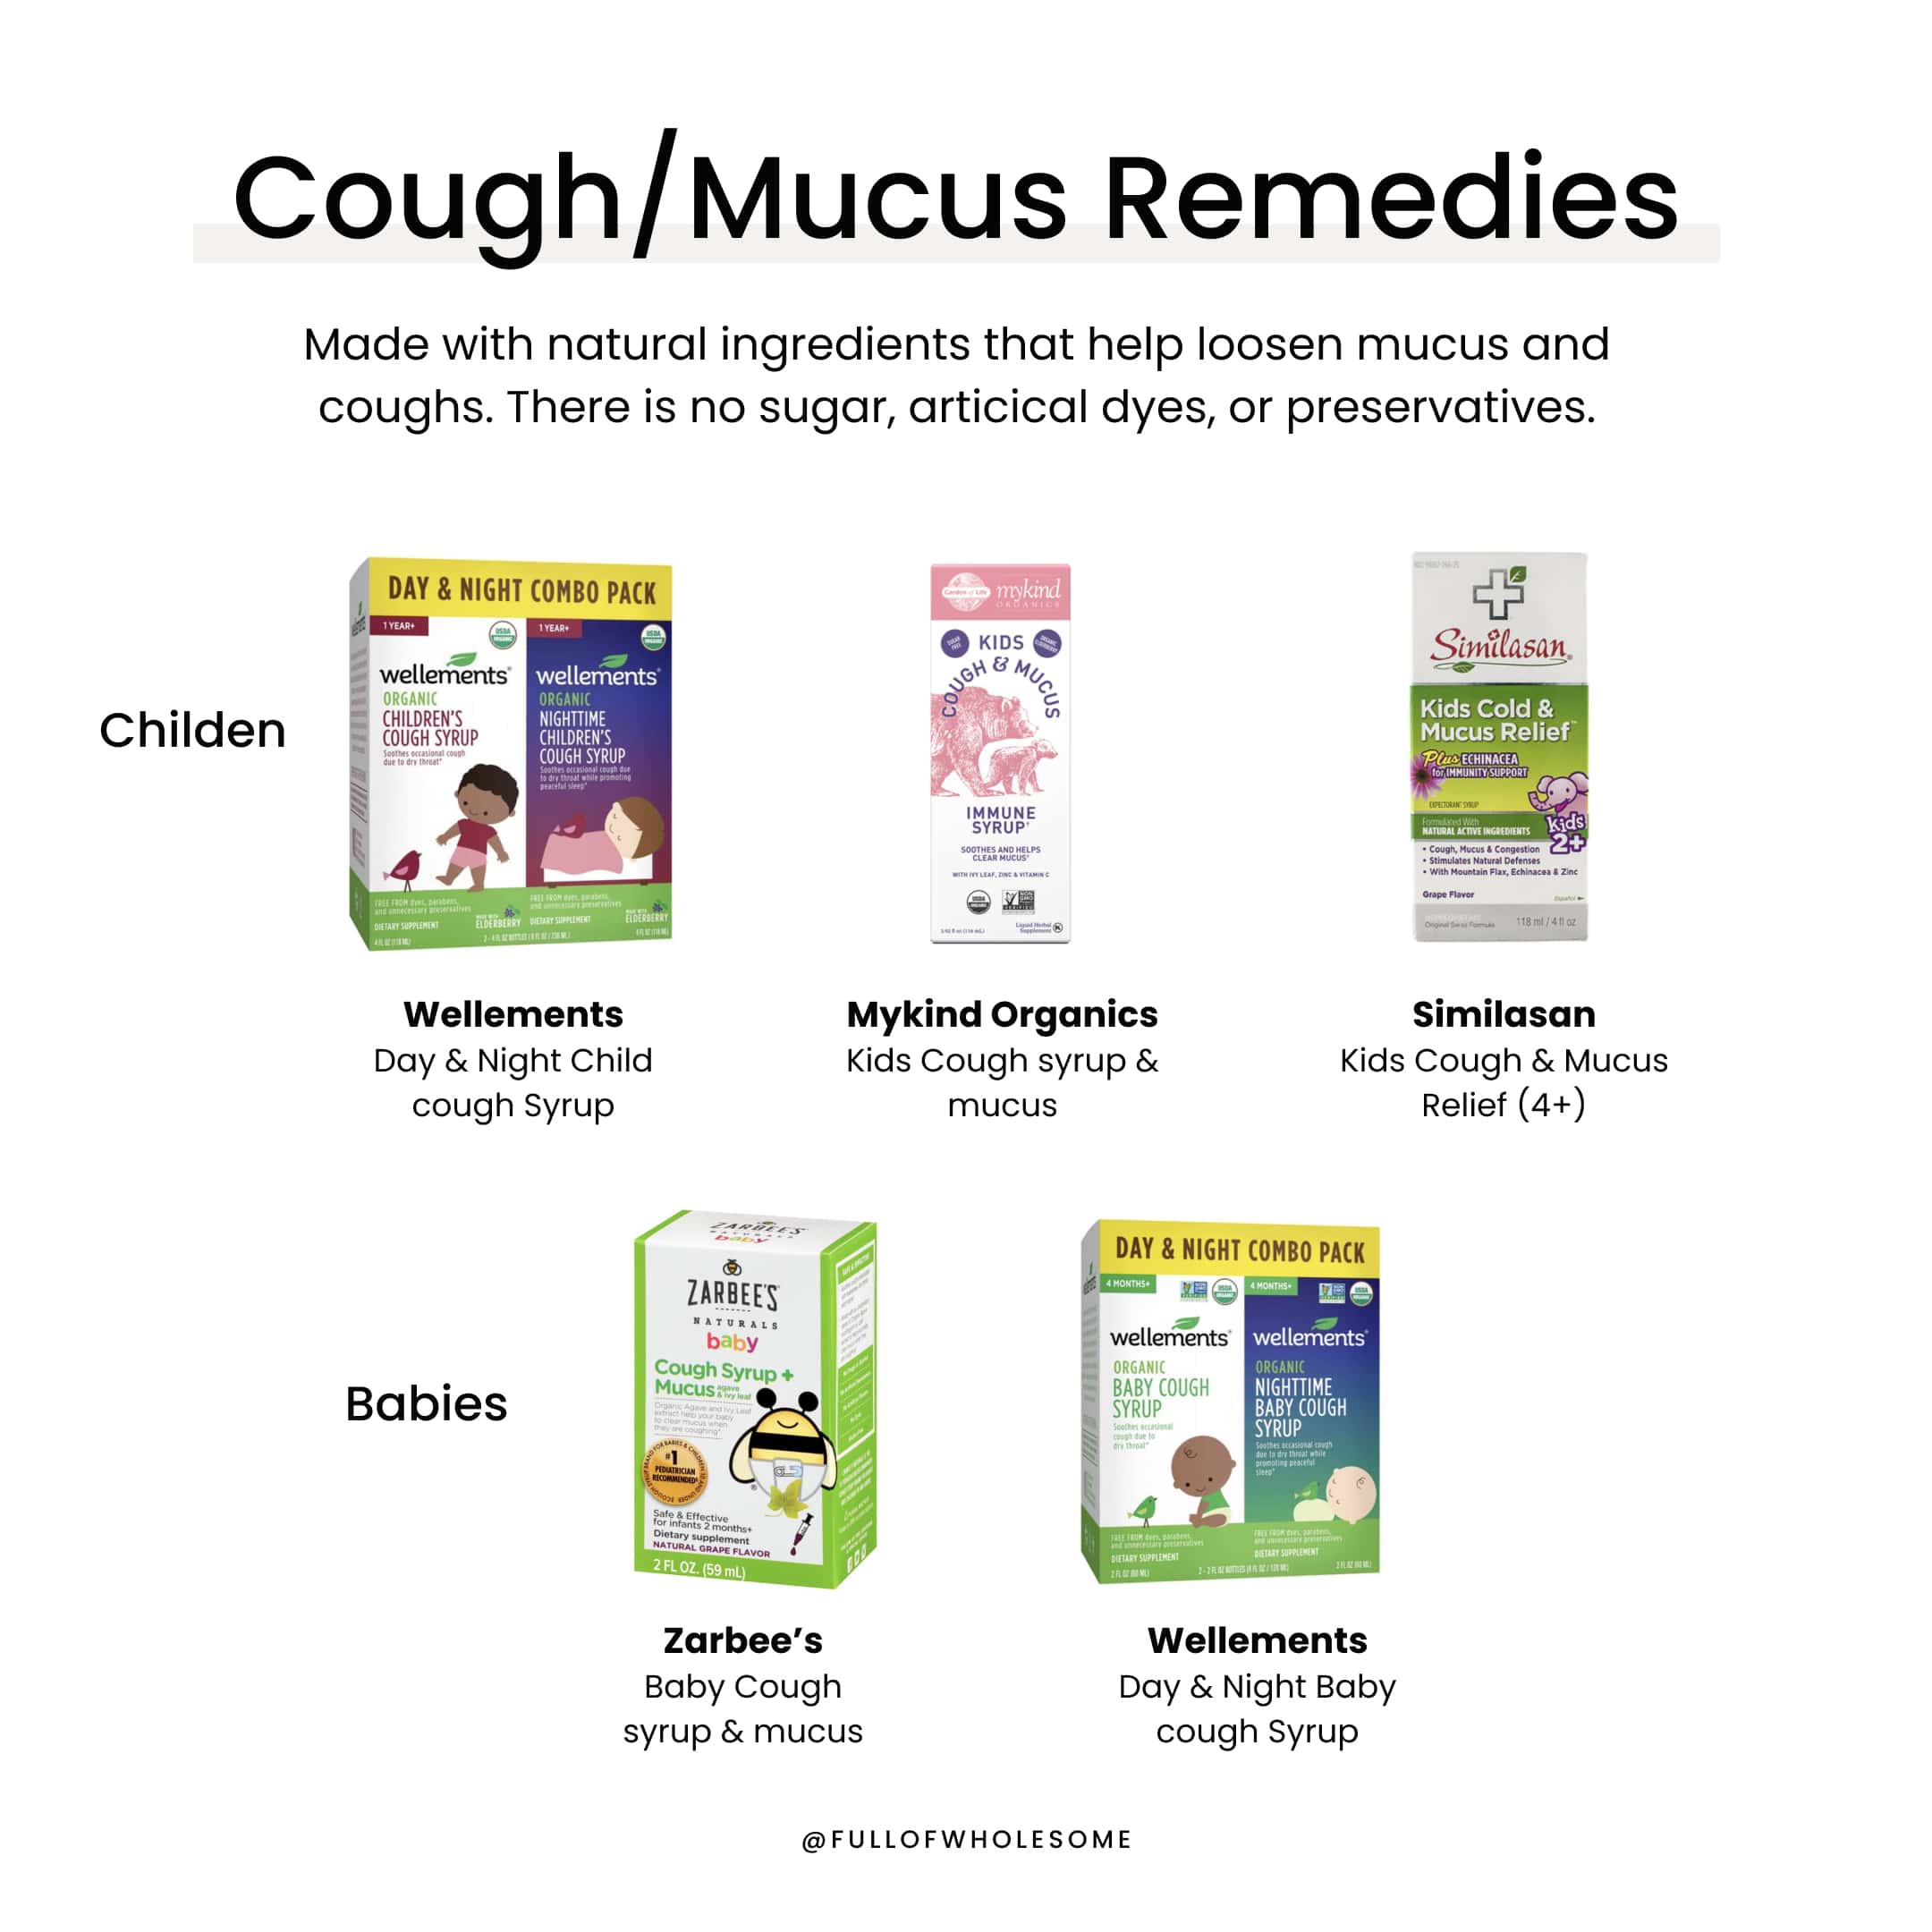 Cough/mucus